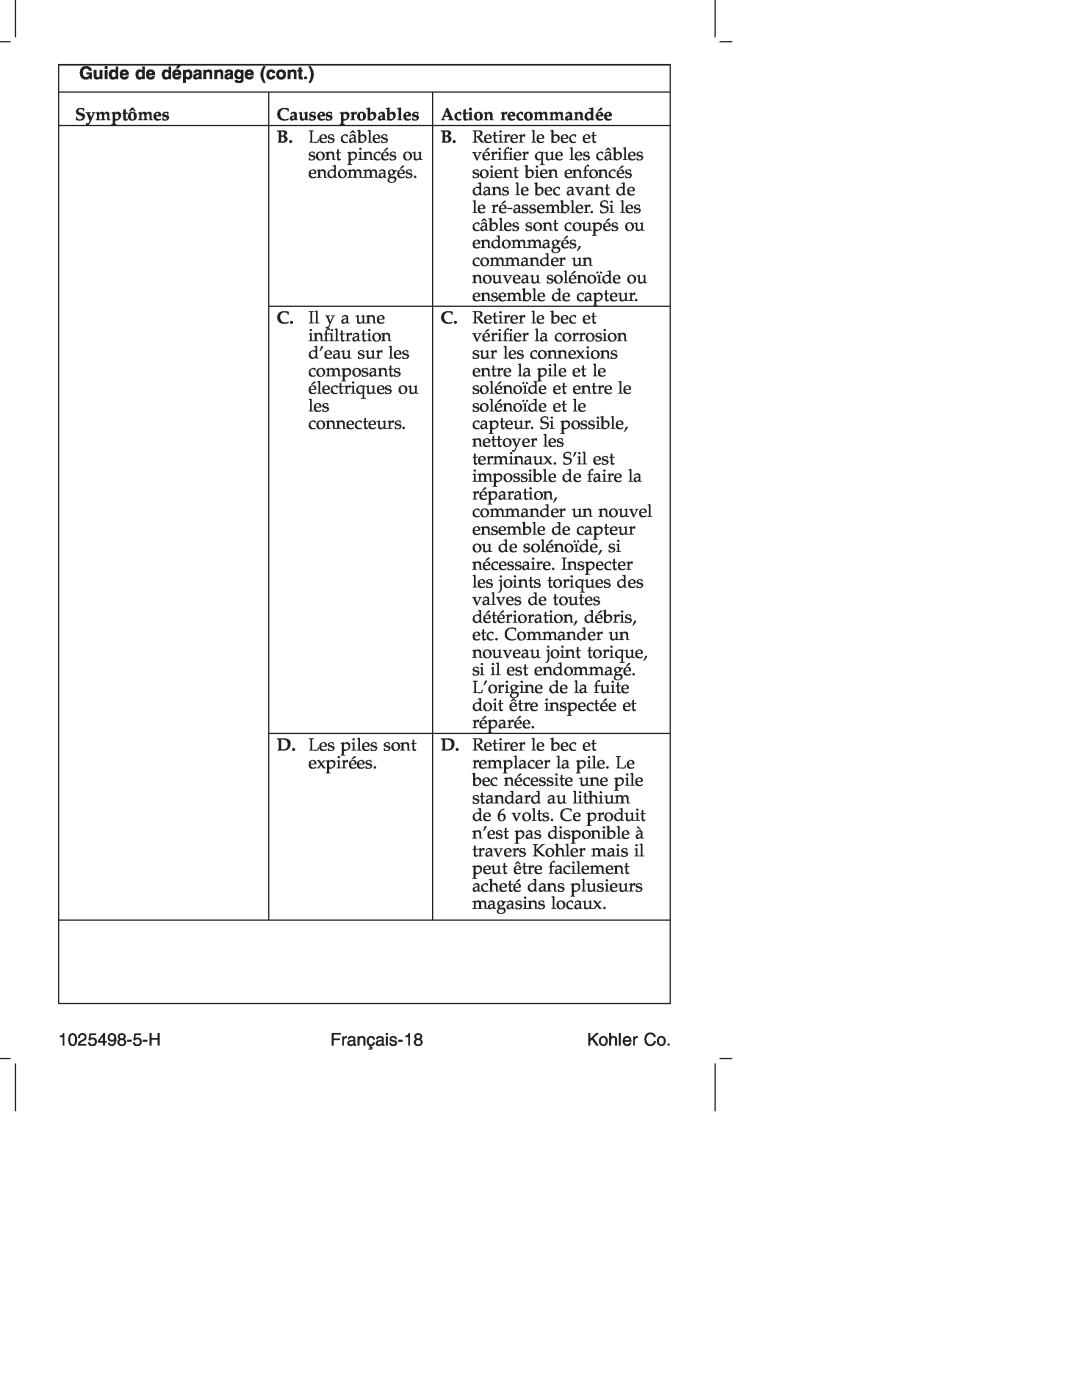 Kohler k-10950, k-10951 manual Guide de dépannage cont, Symptômes, Causes probables, Action recommandée 